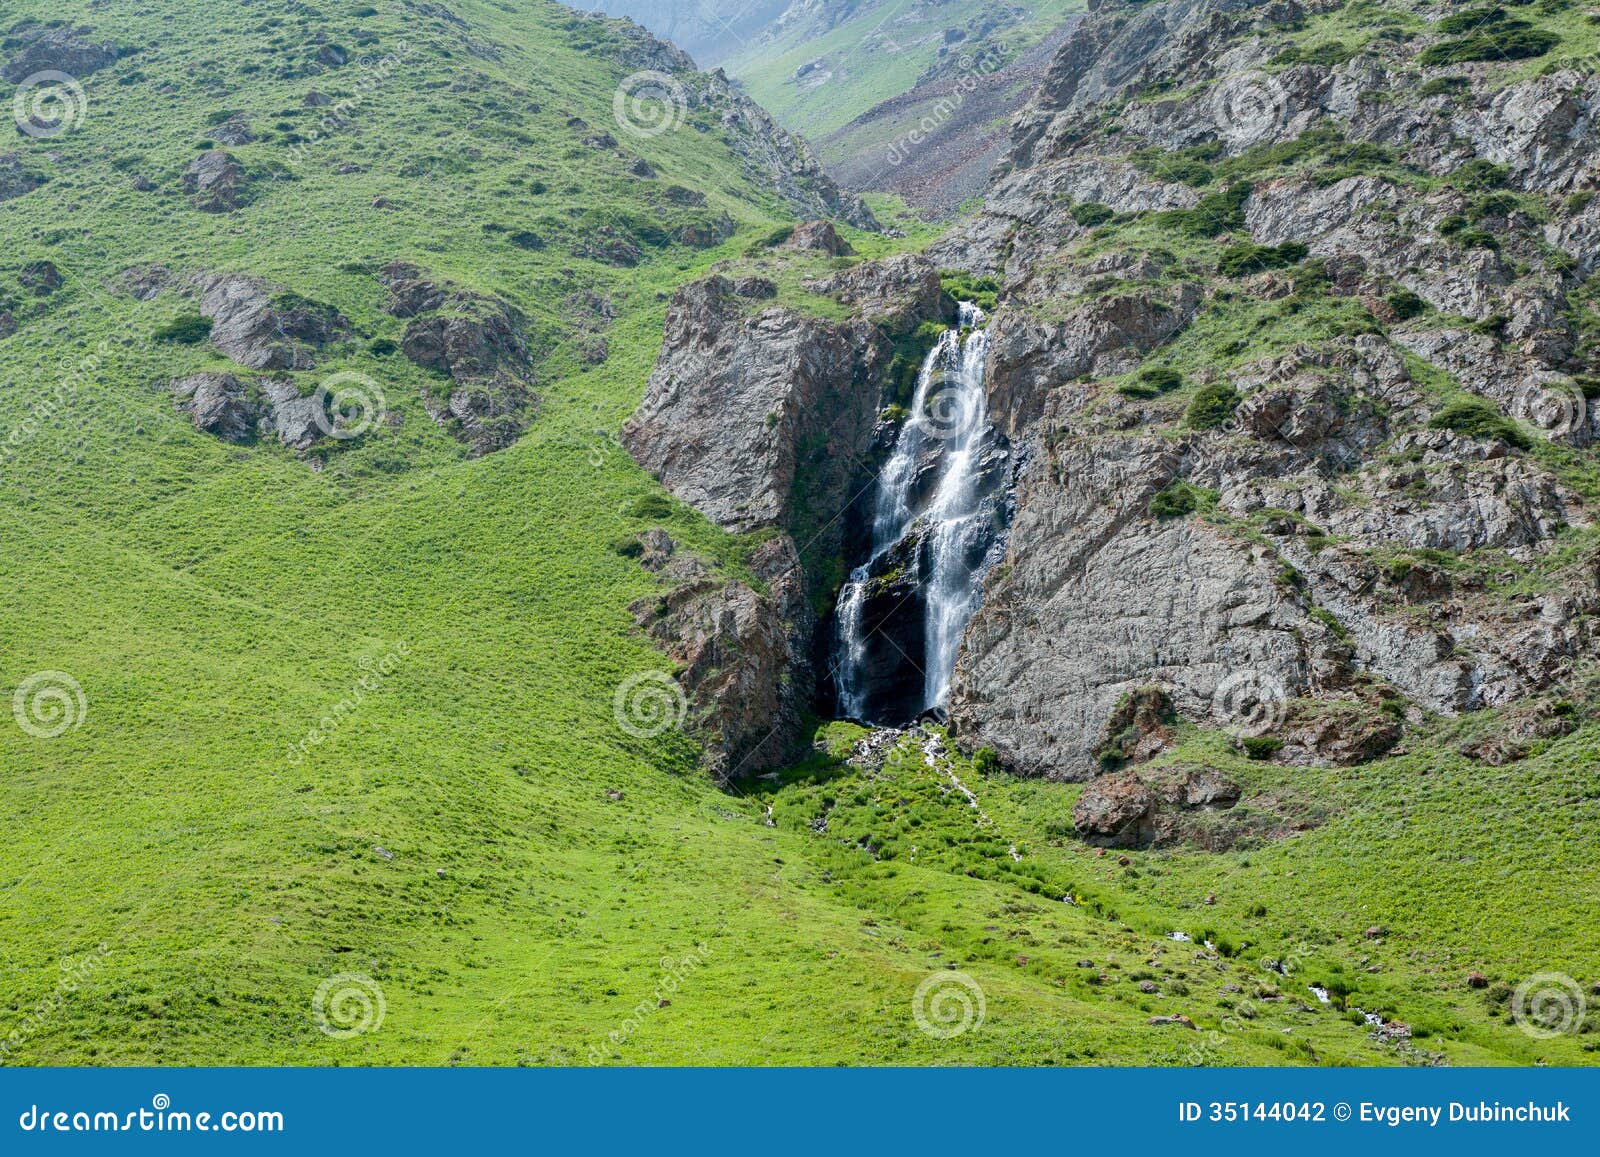 waterfall in kegety ravine, kyrgyzstan